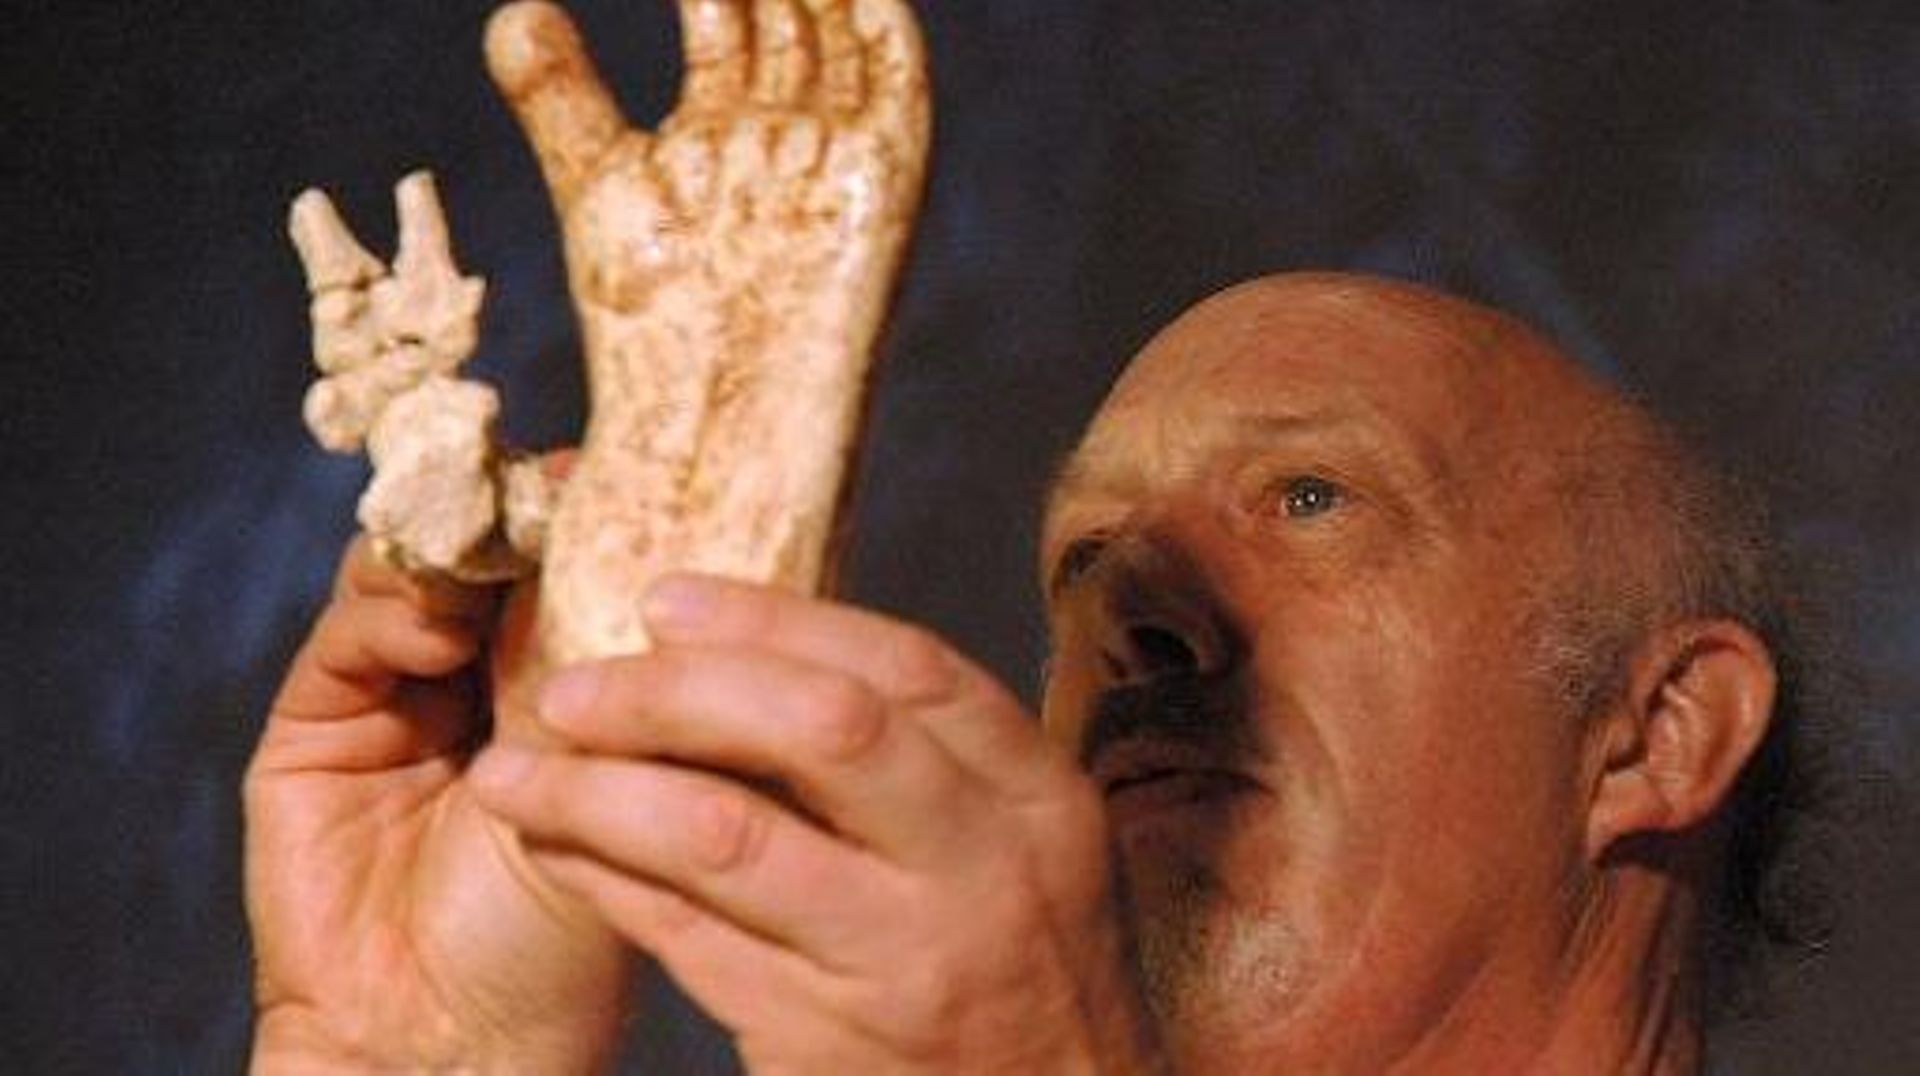 Photographie du 27 mai 2005 à Maropeng, en Afrique du Sud, montrant le Professeur Ron Clarck qui présente des répliques de structures osseuses